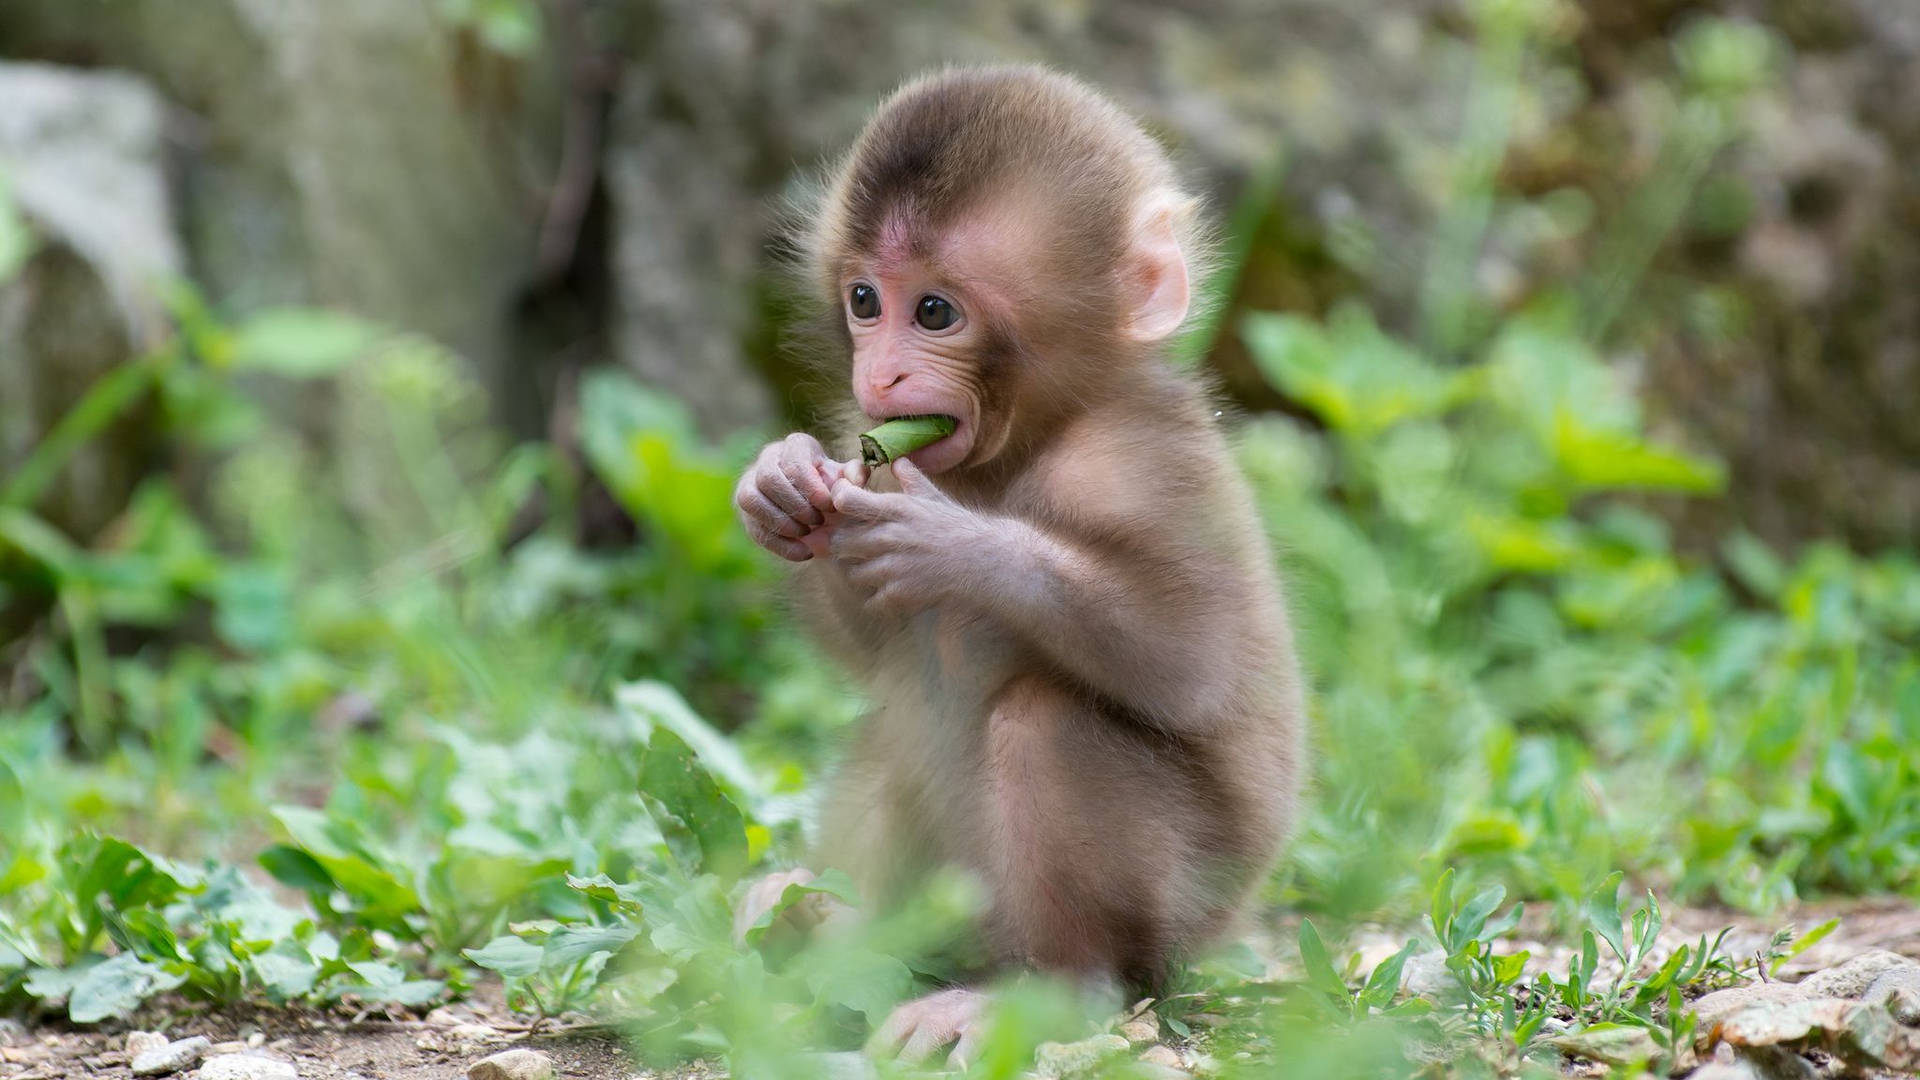 Cute Monkey Eating Leaf Background